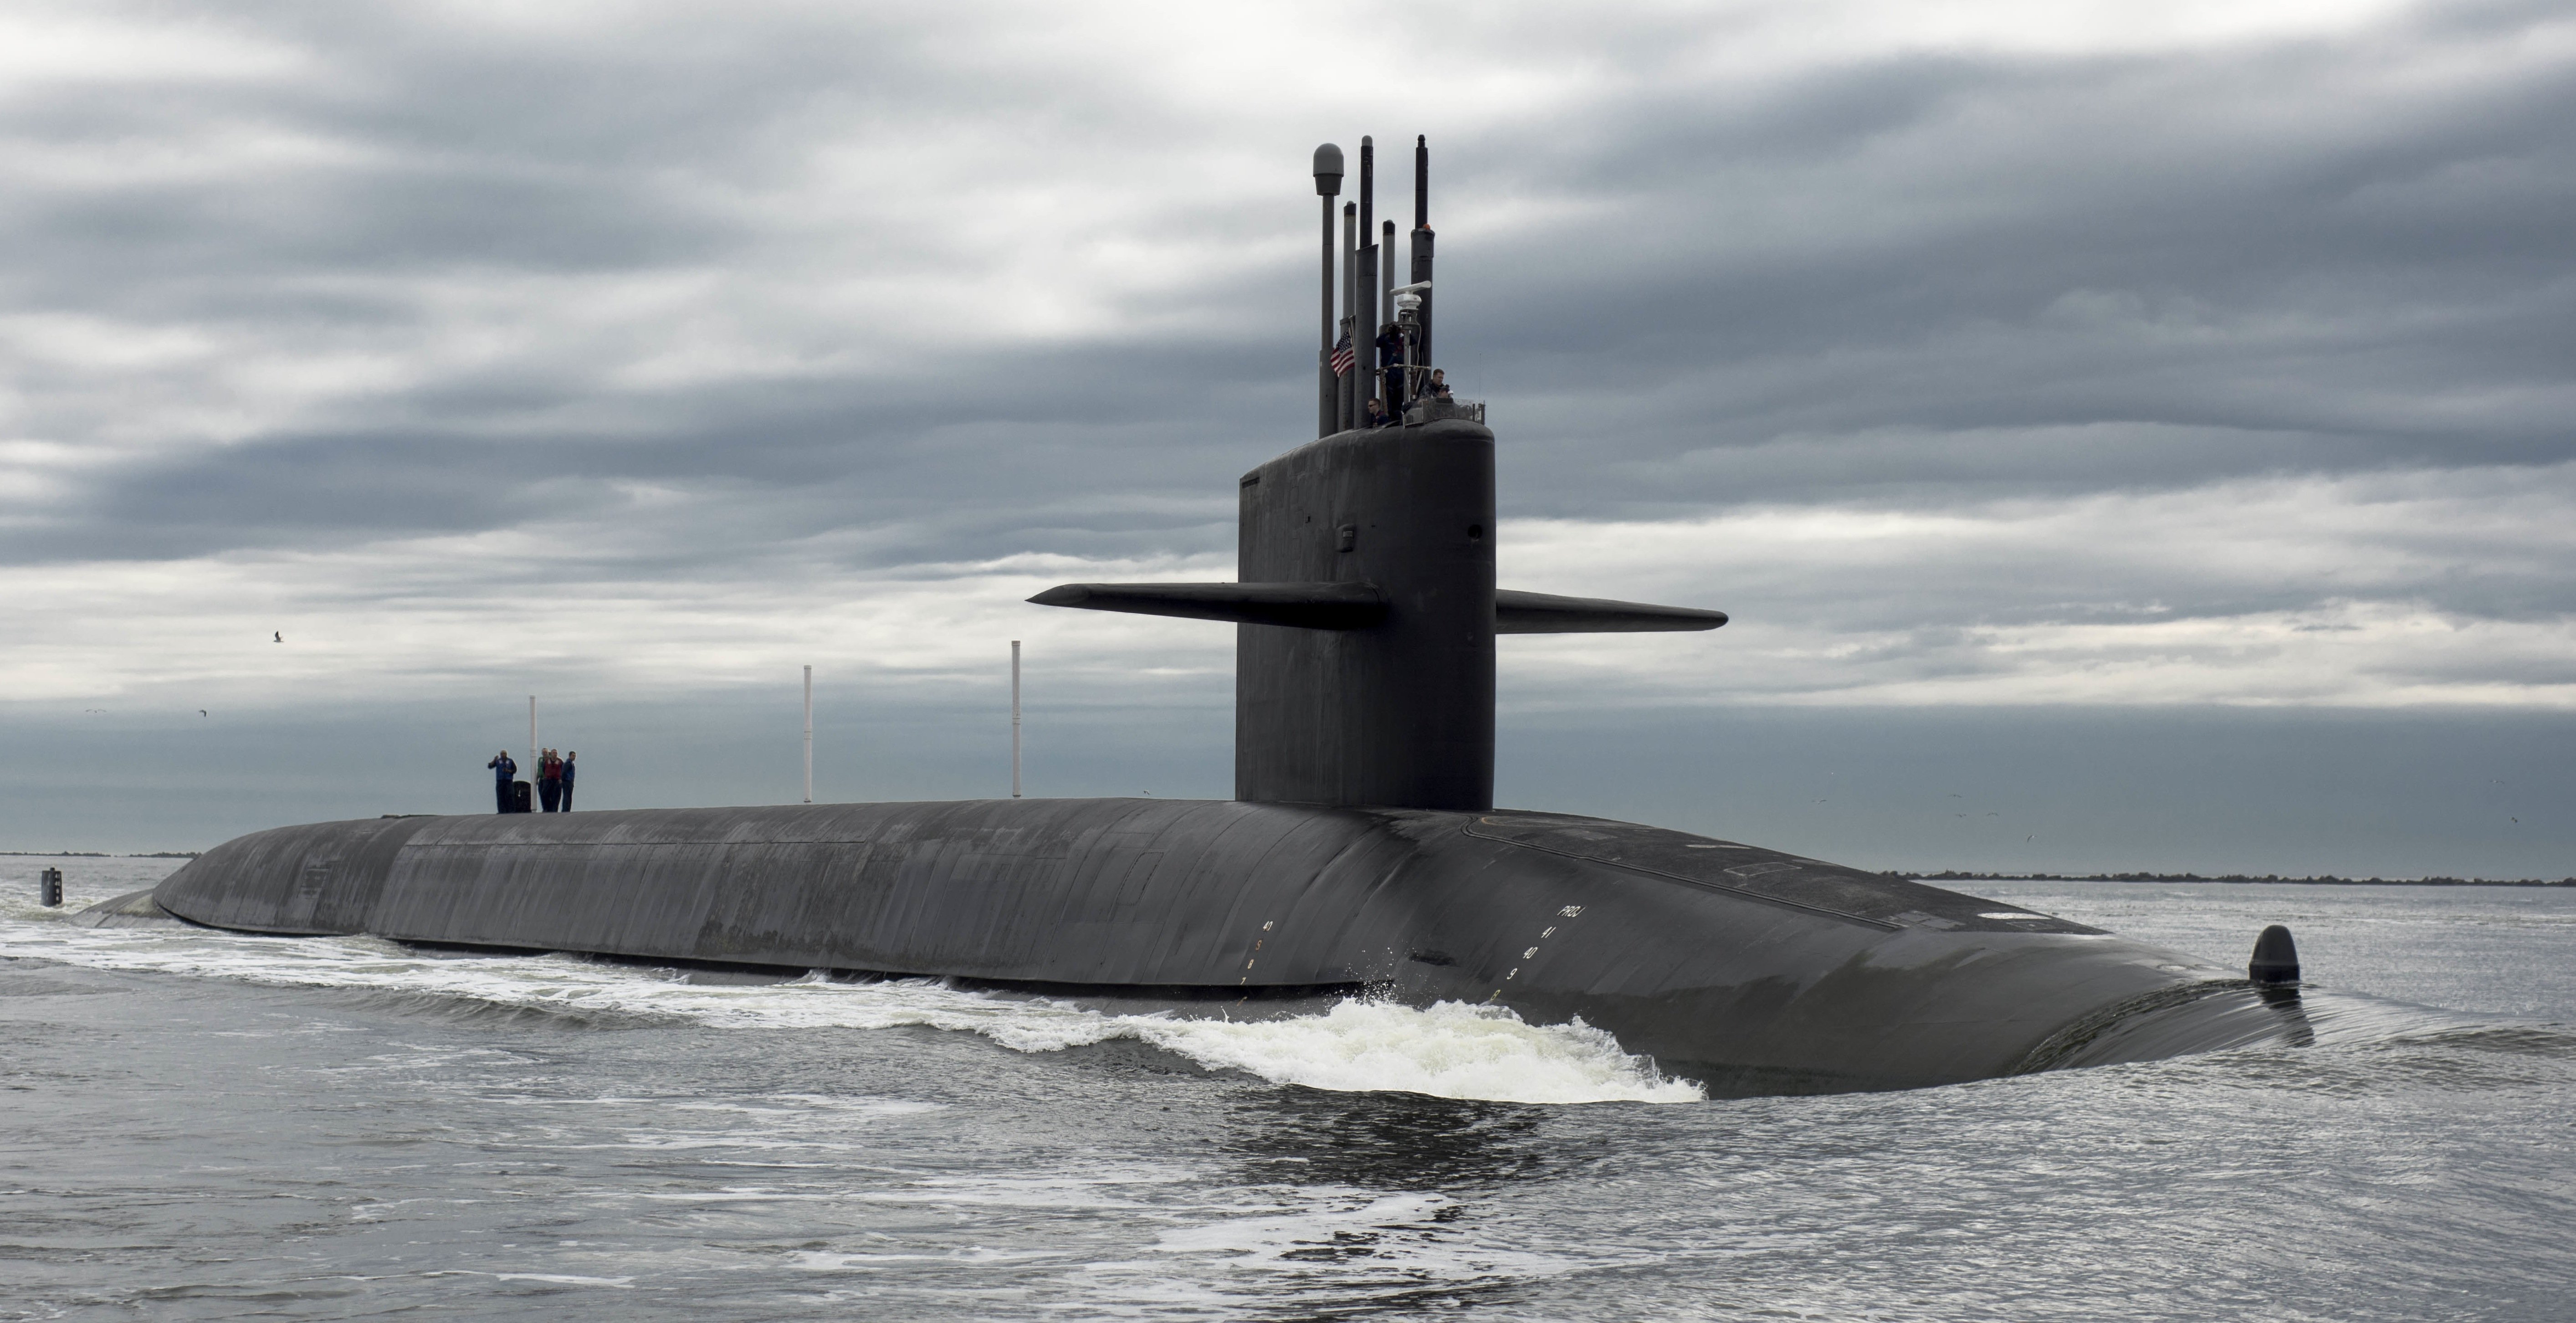 us navy submarine